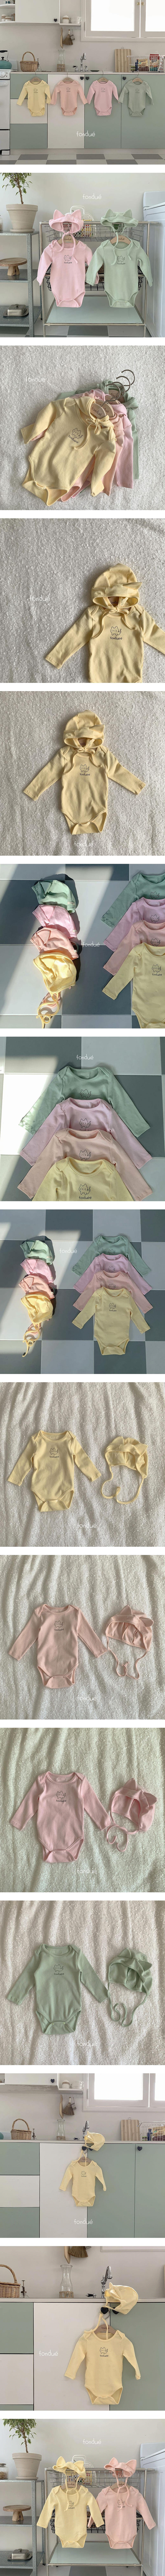 Fondue - Korean Baby Fashion - #babyoninstagram - Nyang Nyang Bonnet Set - 5